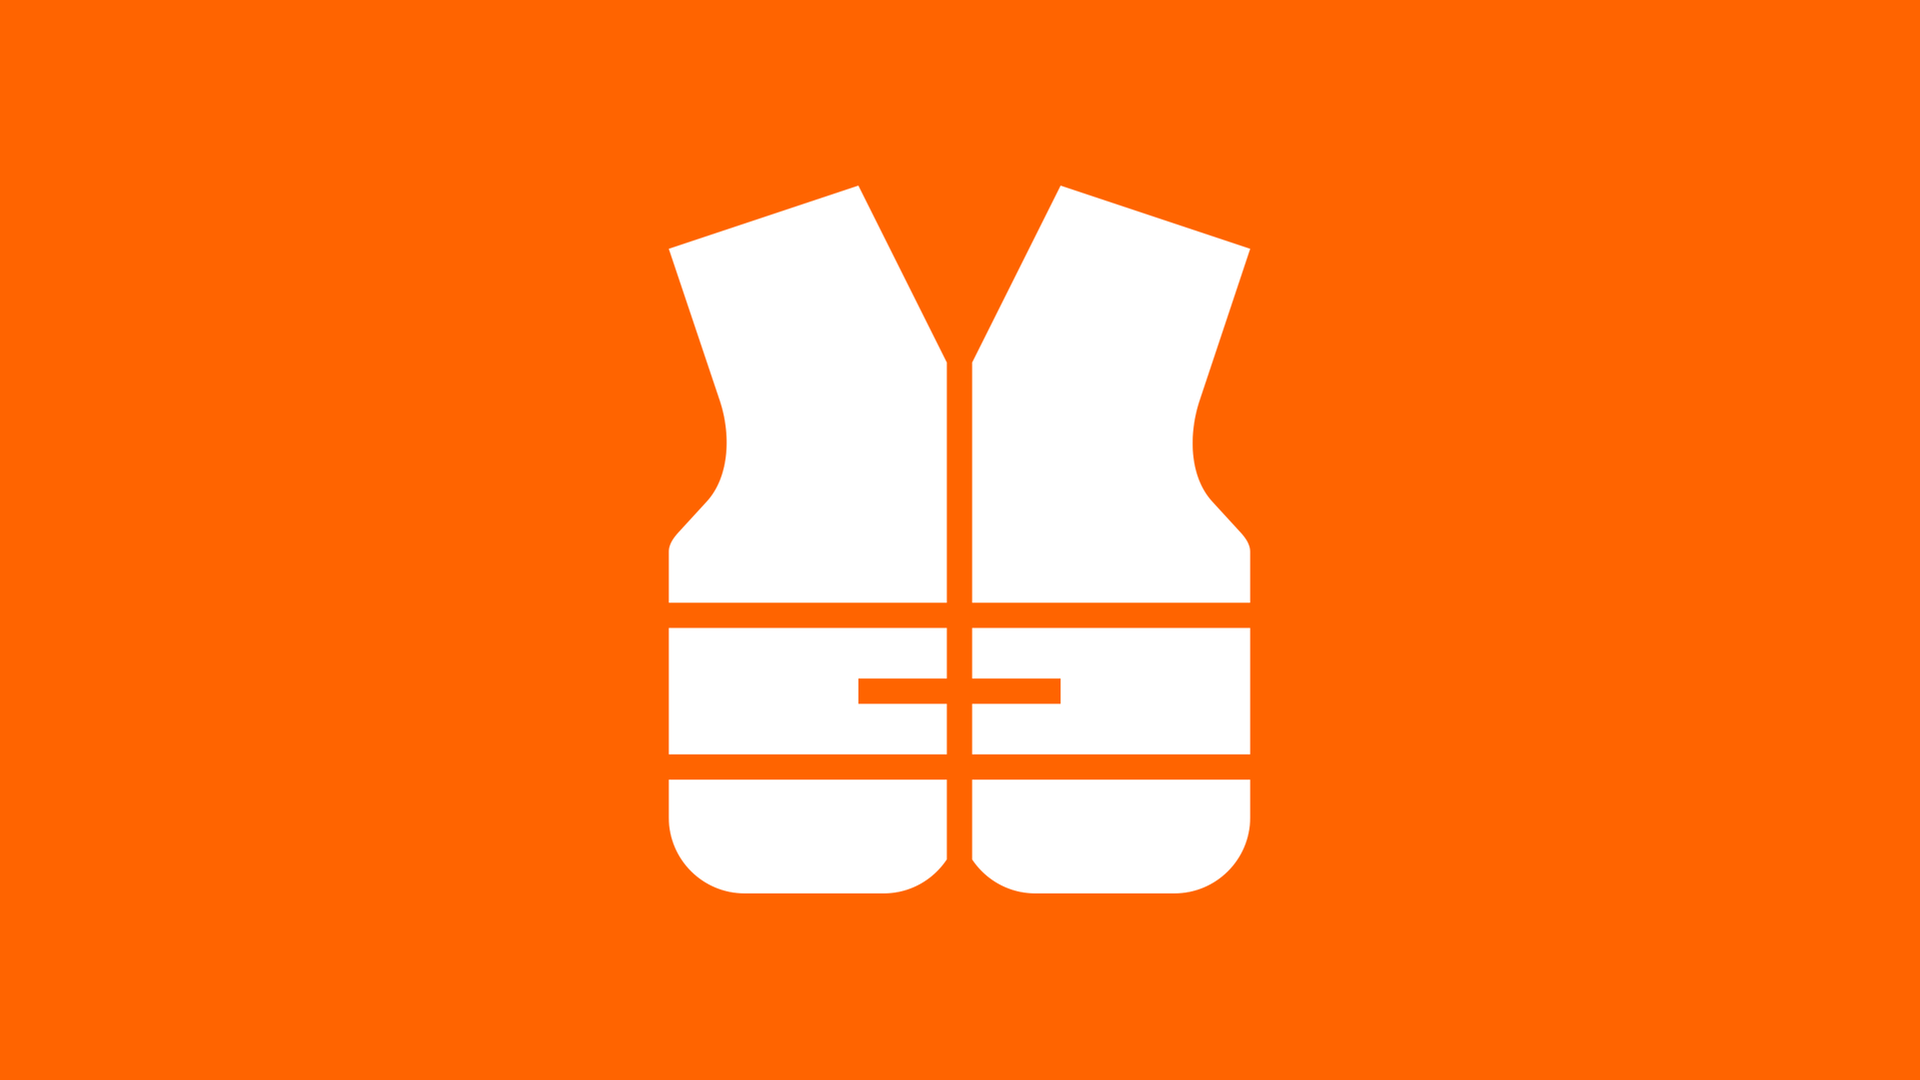 Eine stilisierte Rettungsweste in weiß auf orangenem Hintergrund